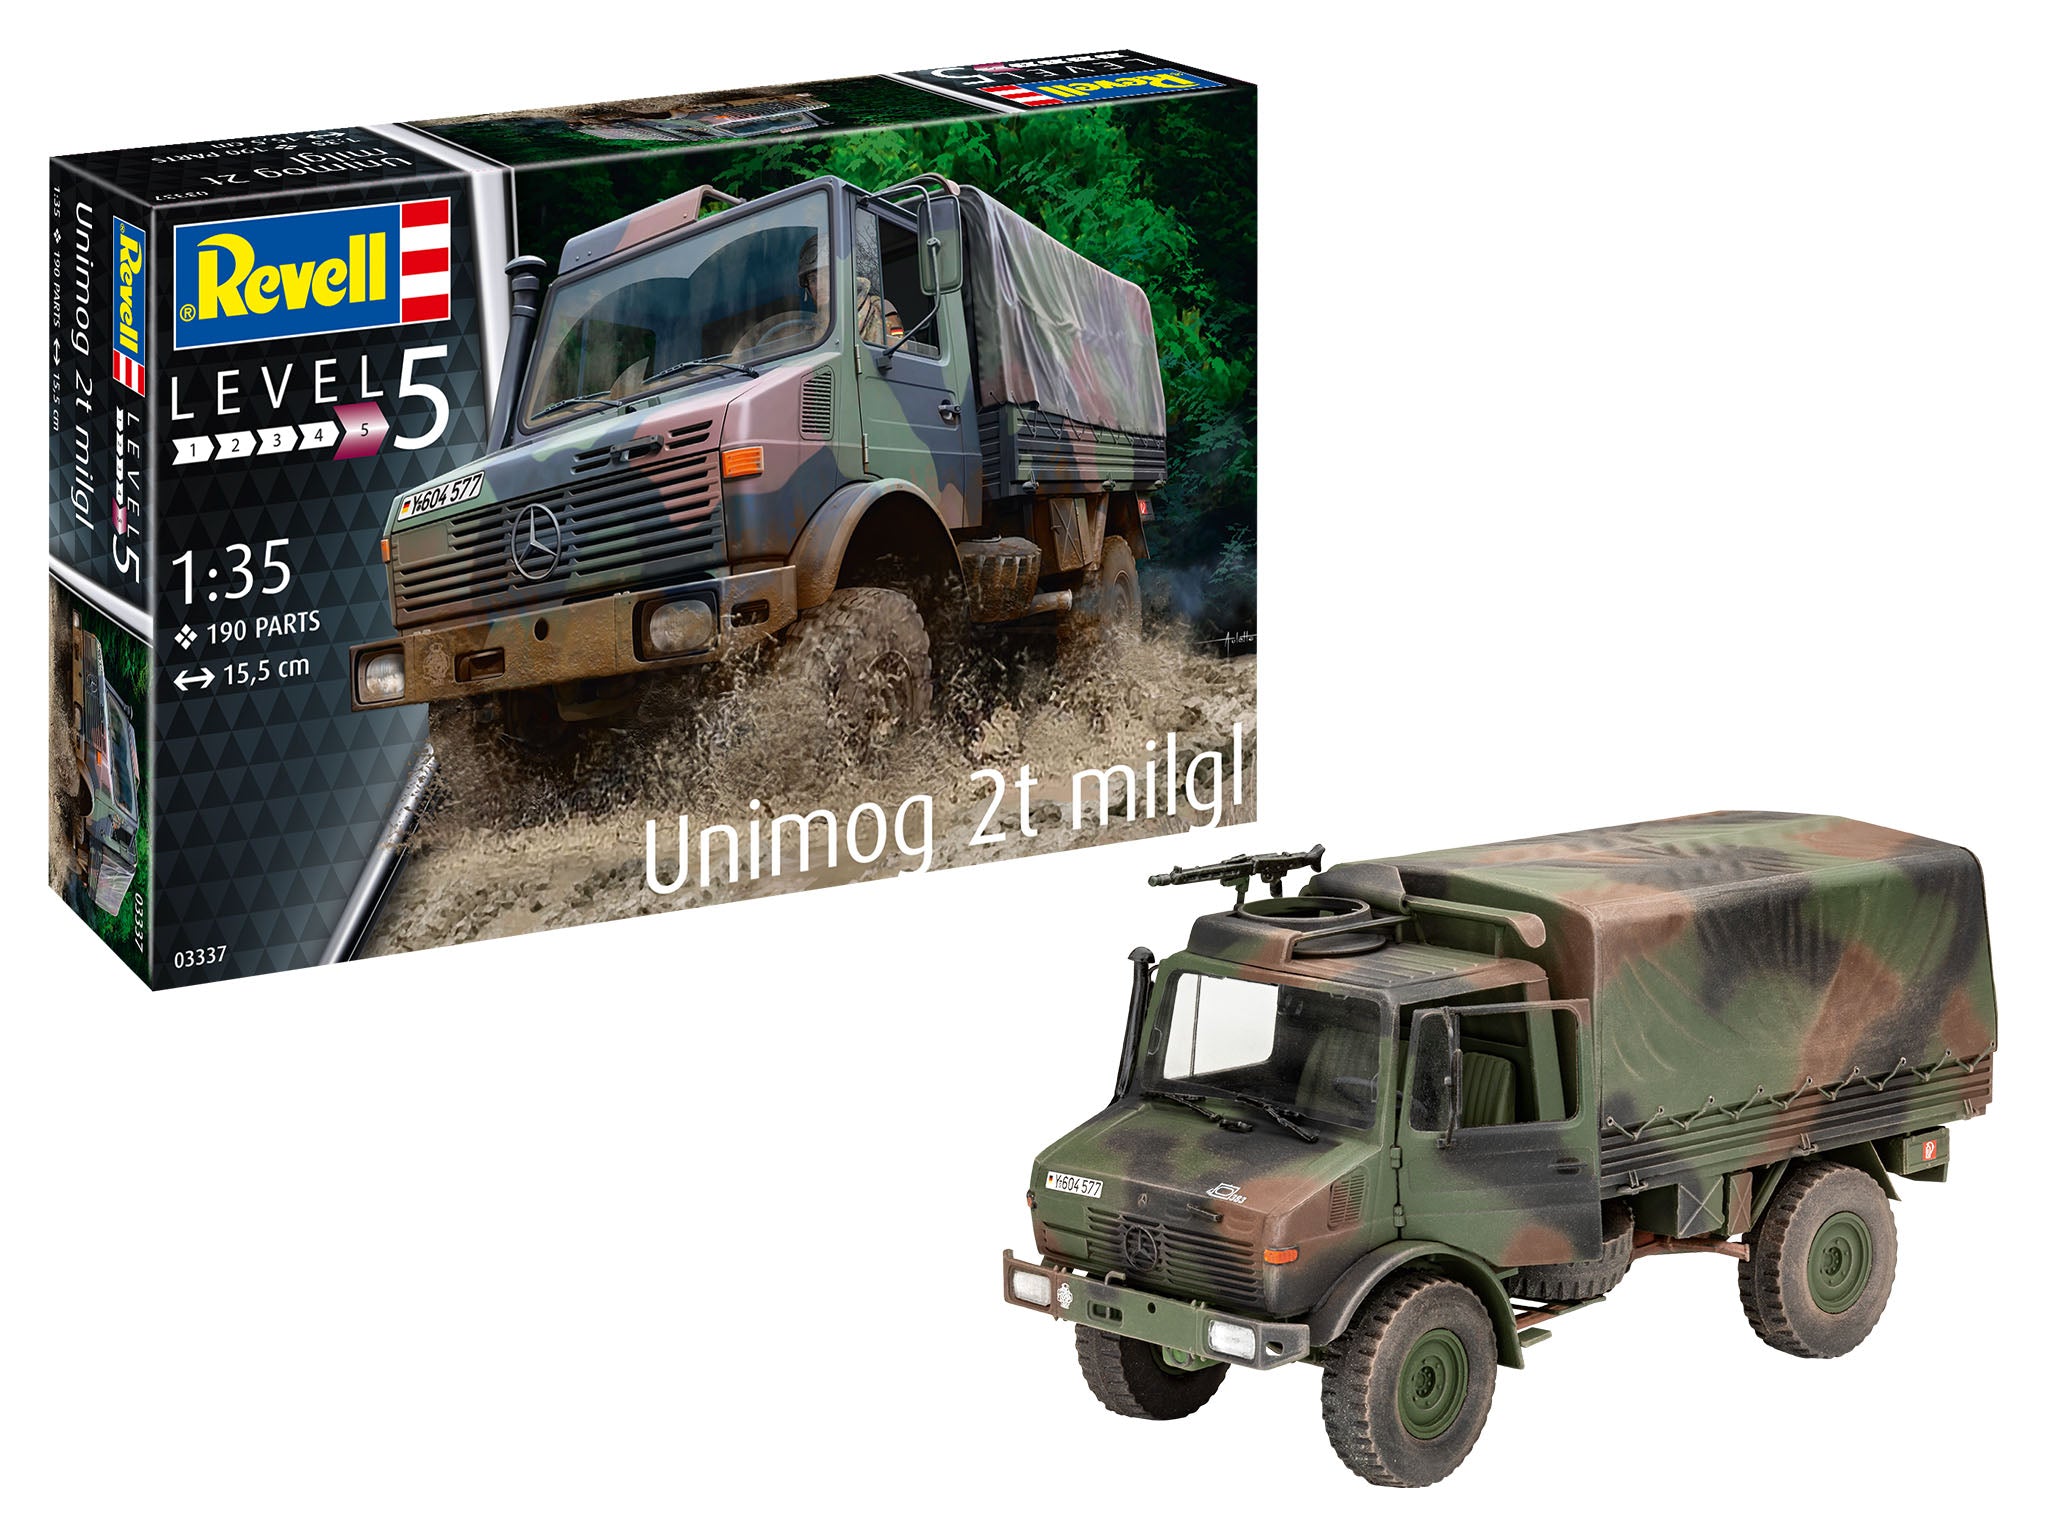 Infantry Model Kit Revell Unimog 2T milgl 1:35